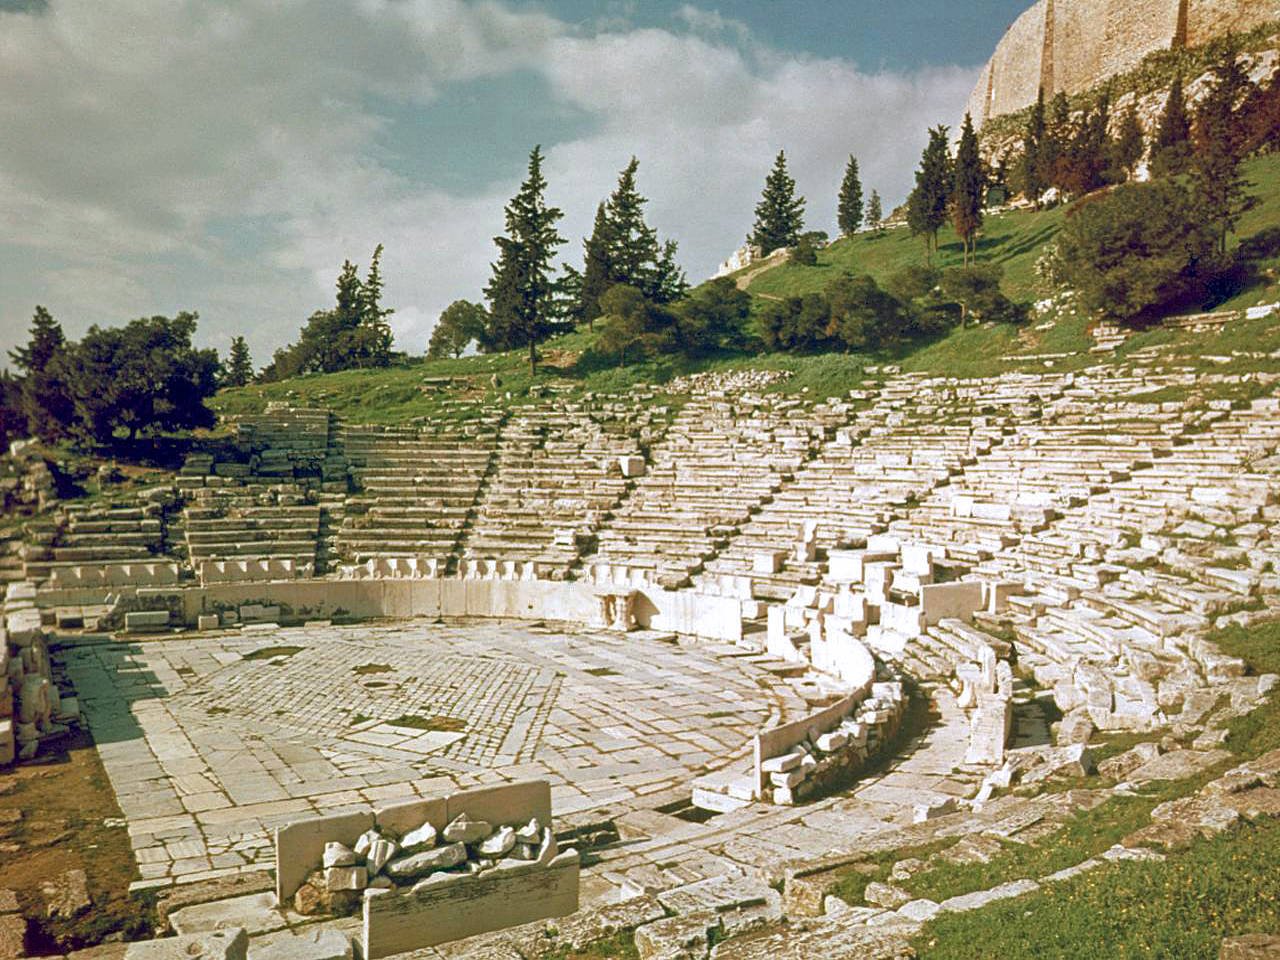 Про афинский театр